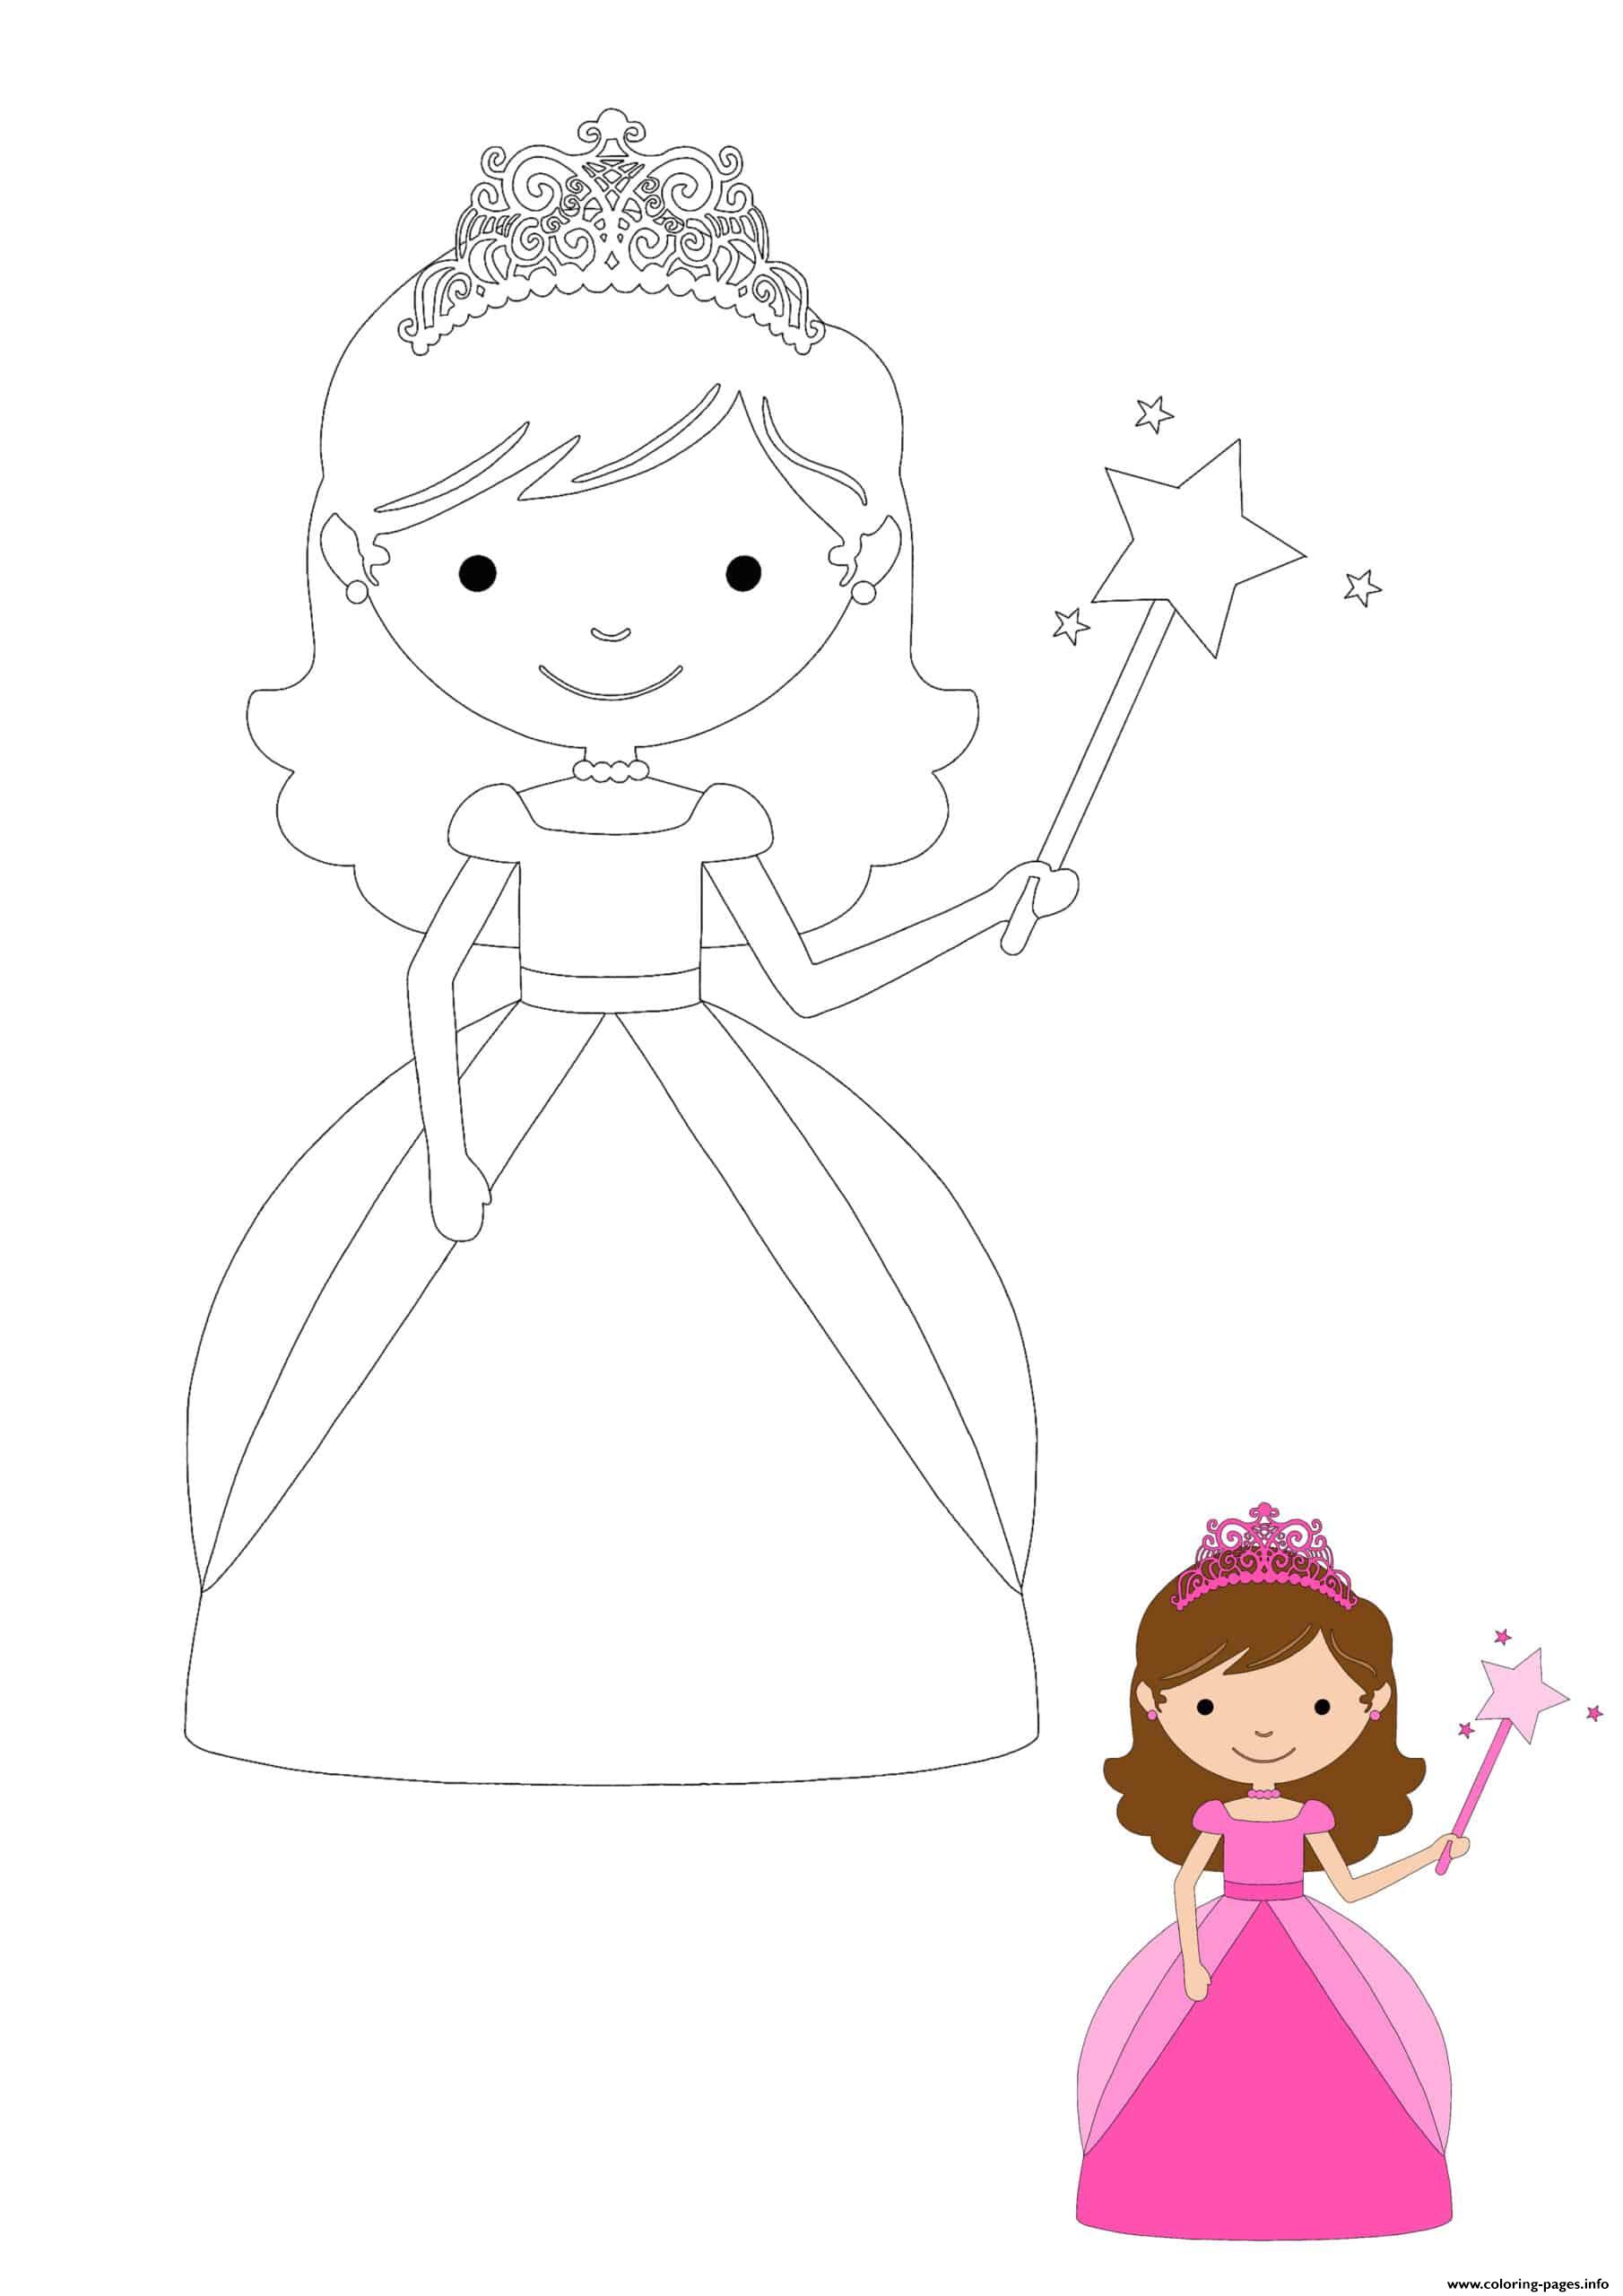 Baby Princess coloring